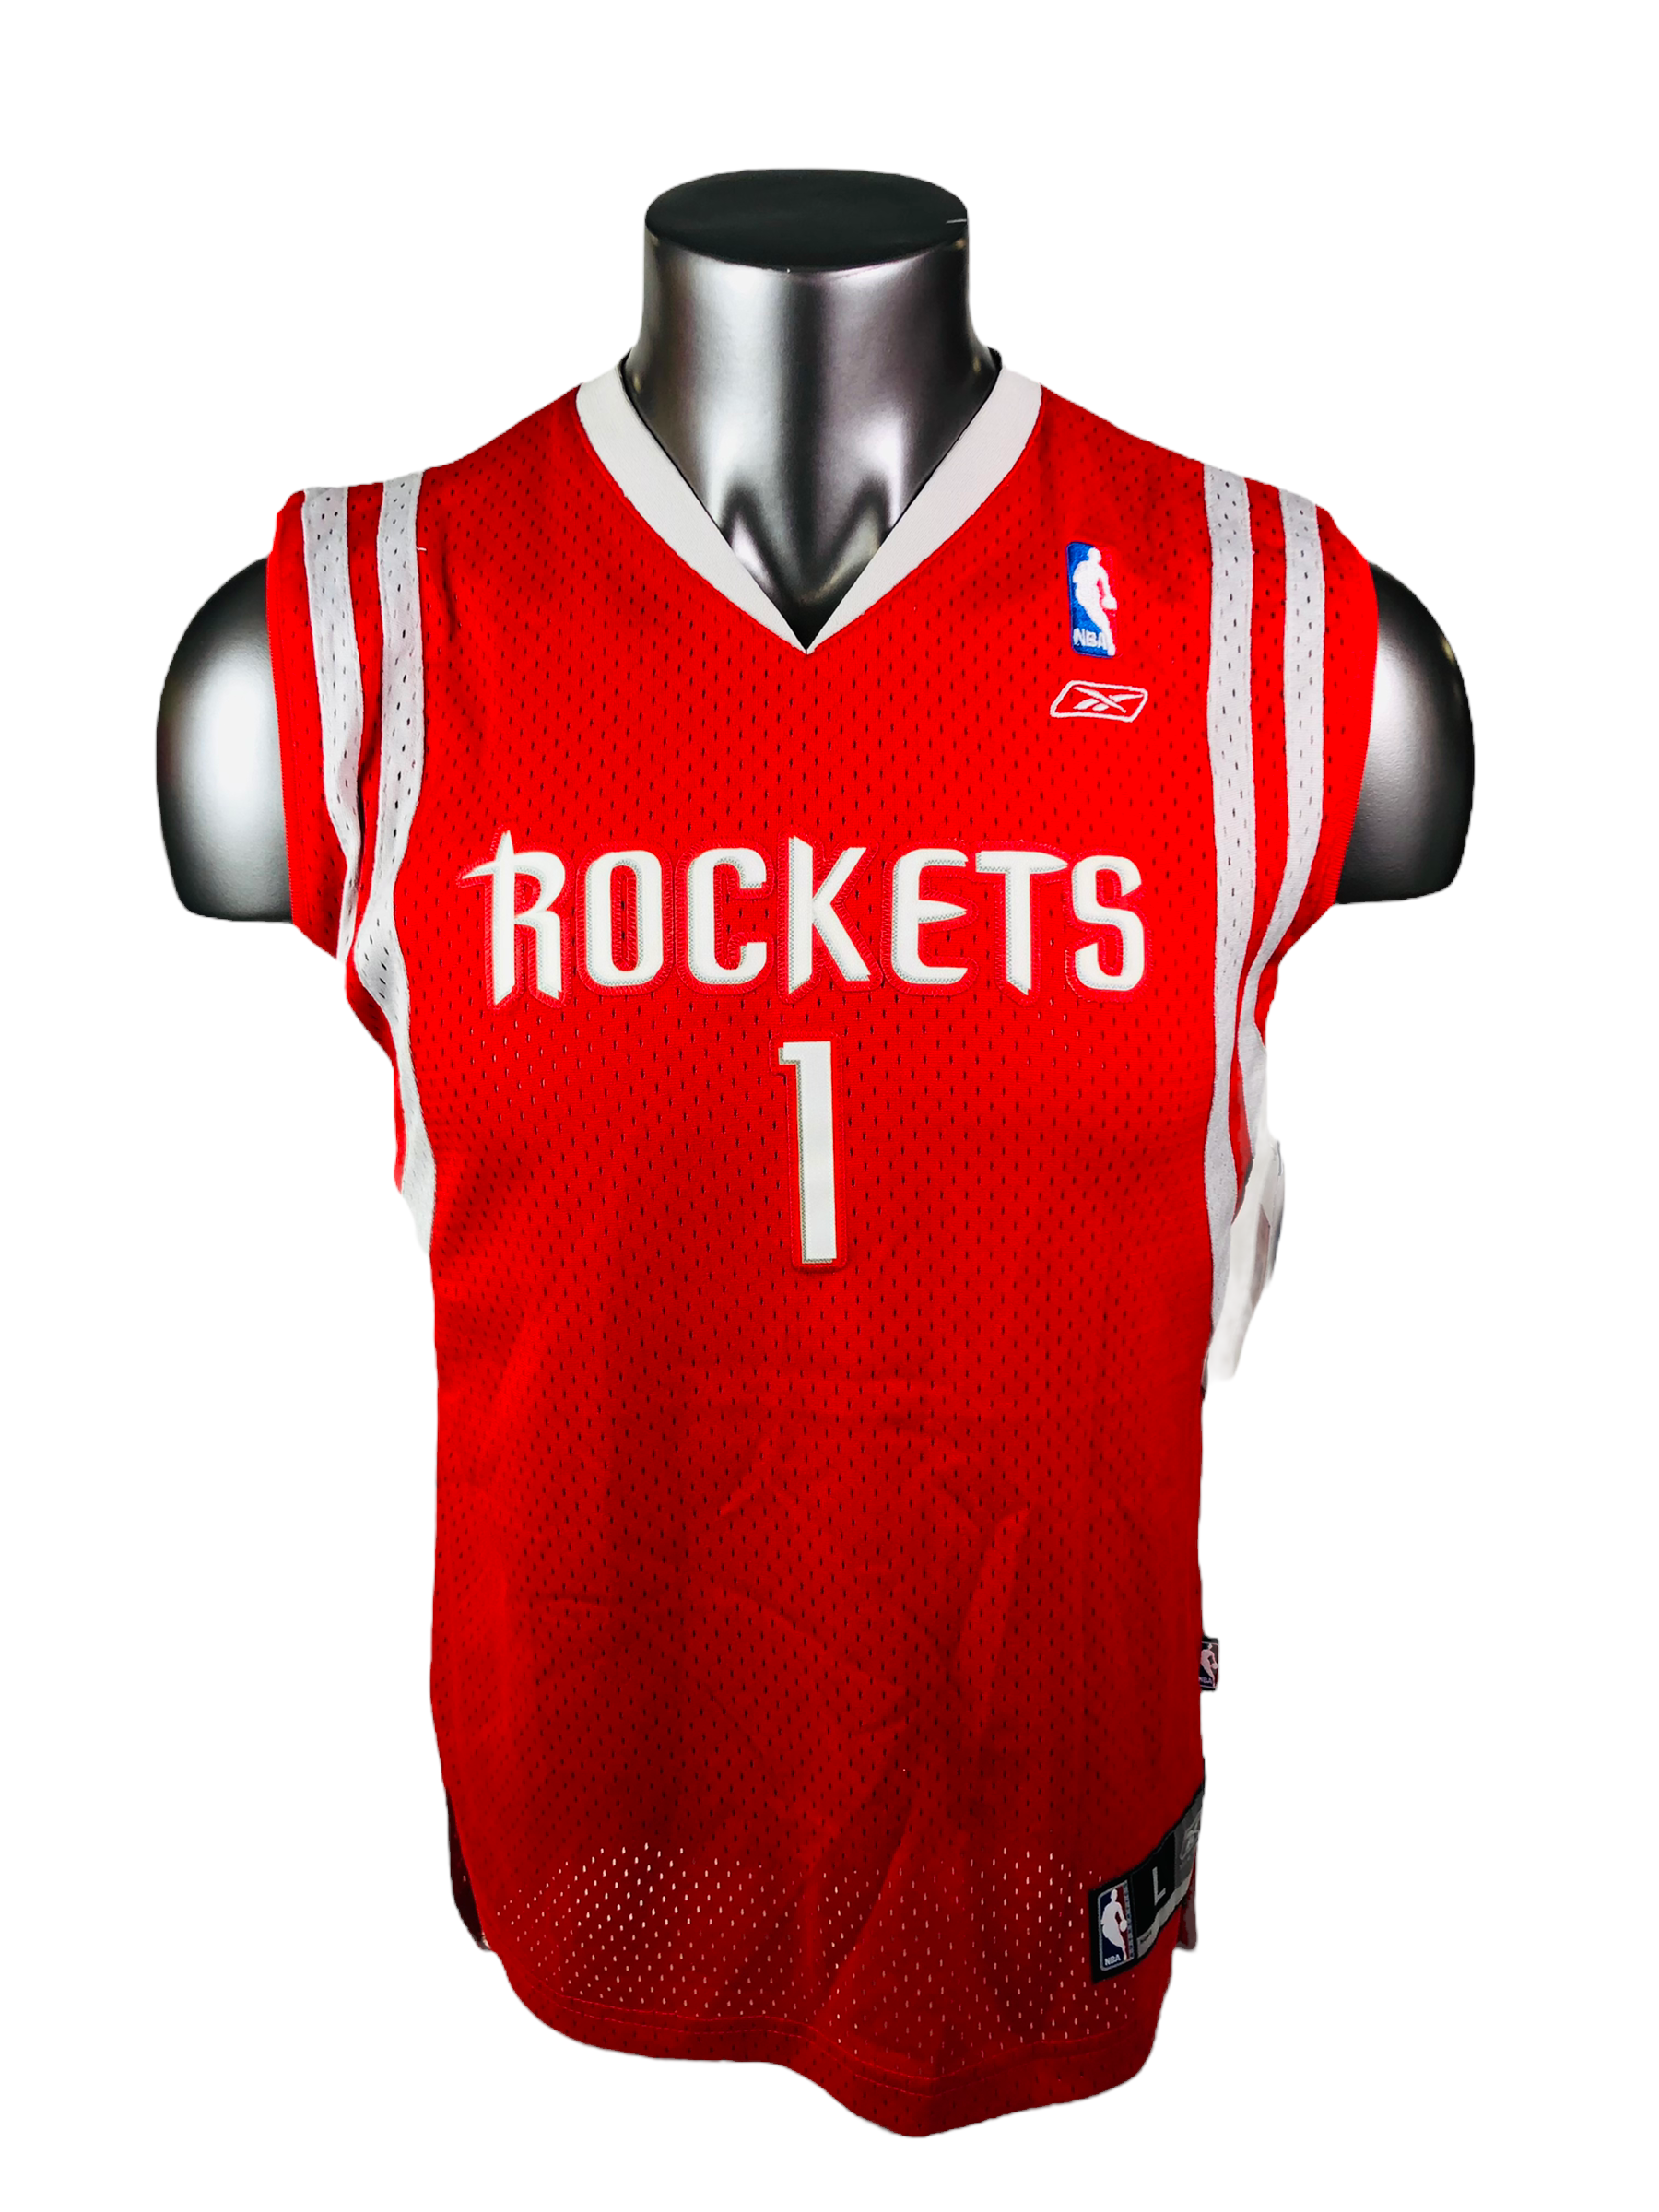 Houston Rockets Jerseys in Houston Rockets Team Shop